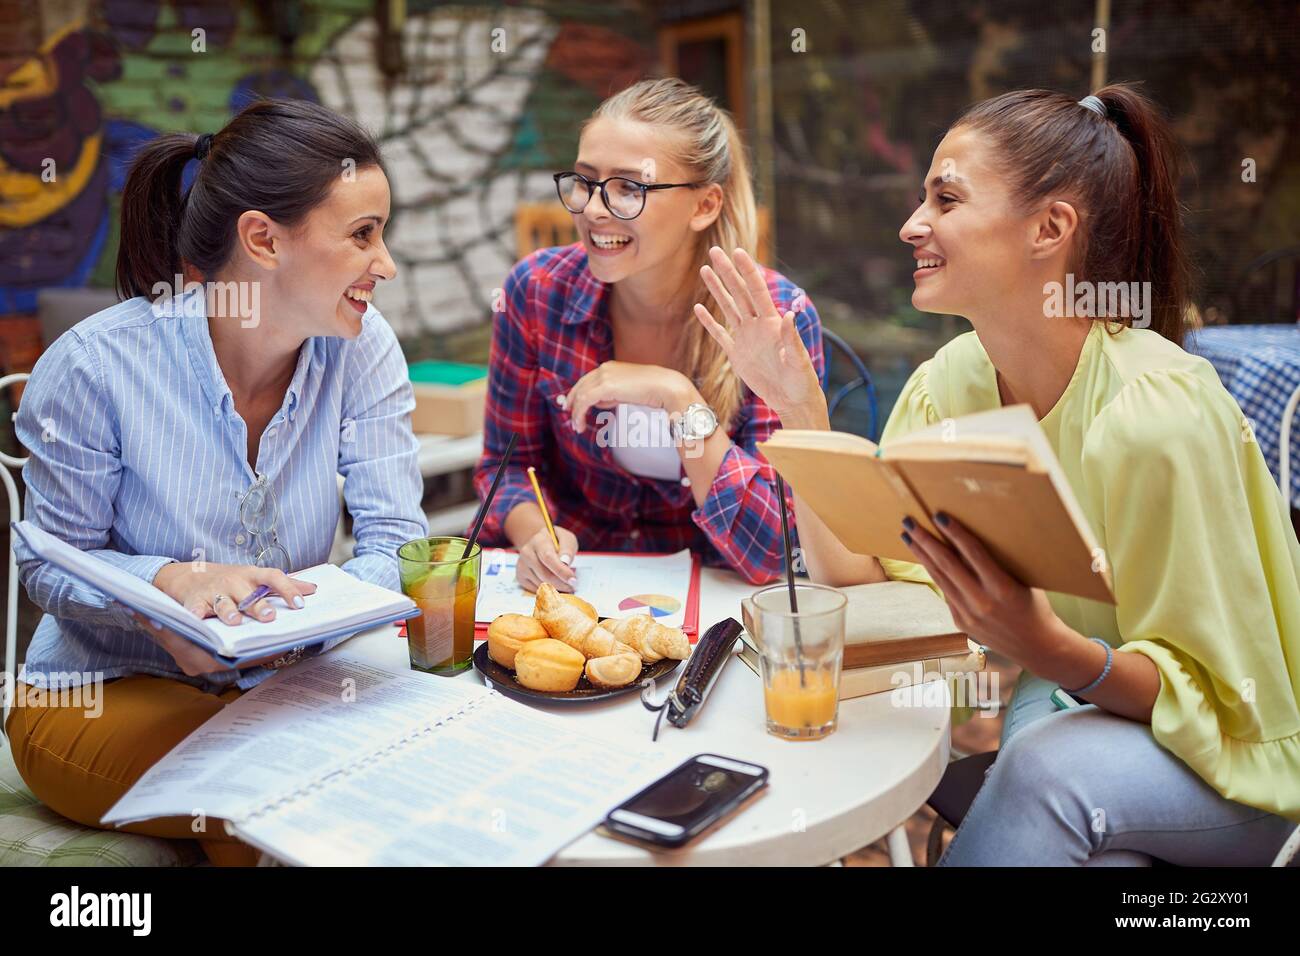 Drei junge Erwachsene kaukasische Frauen studieren zusammen im Café im Freien, lächeln, lachen, reden Stockfoto